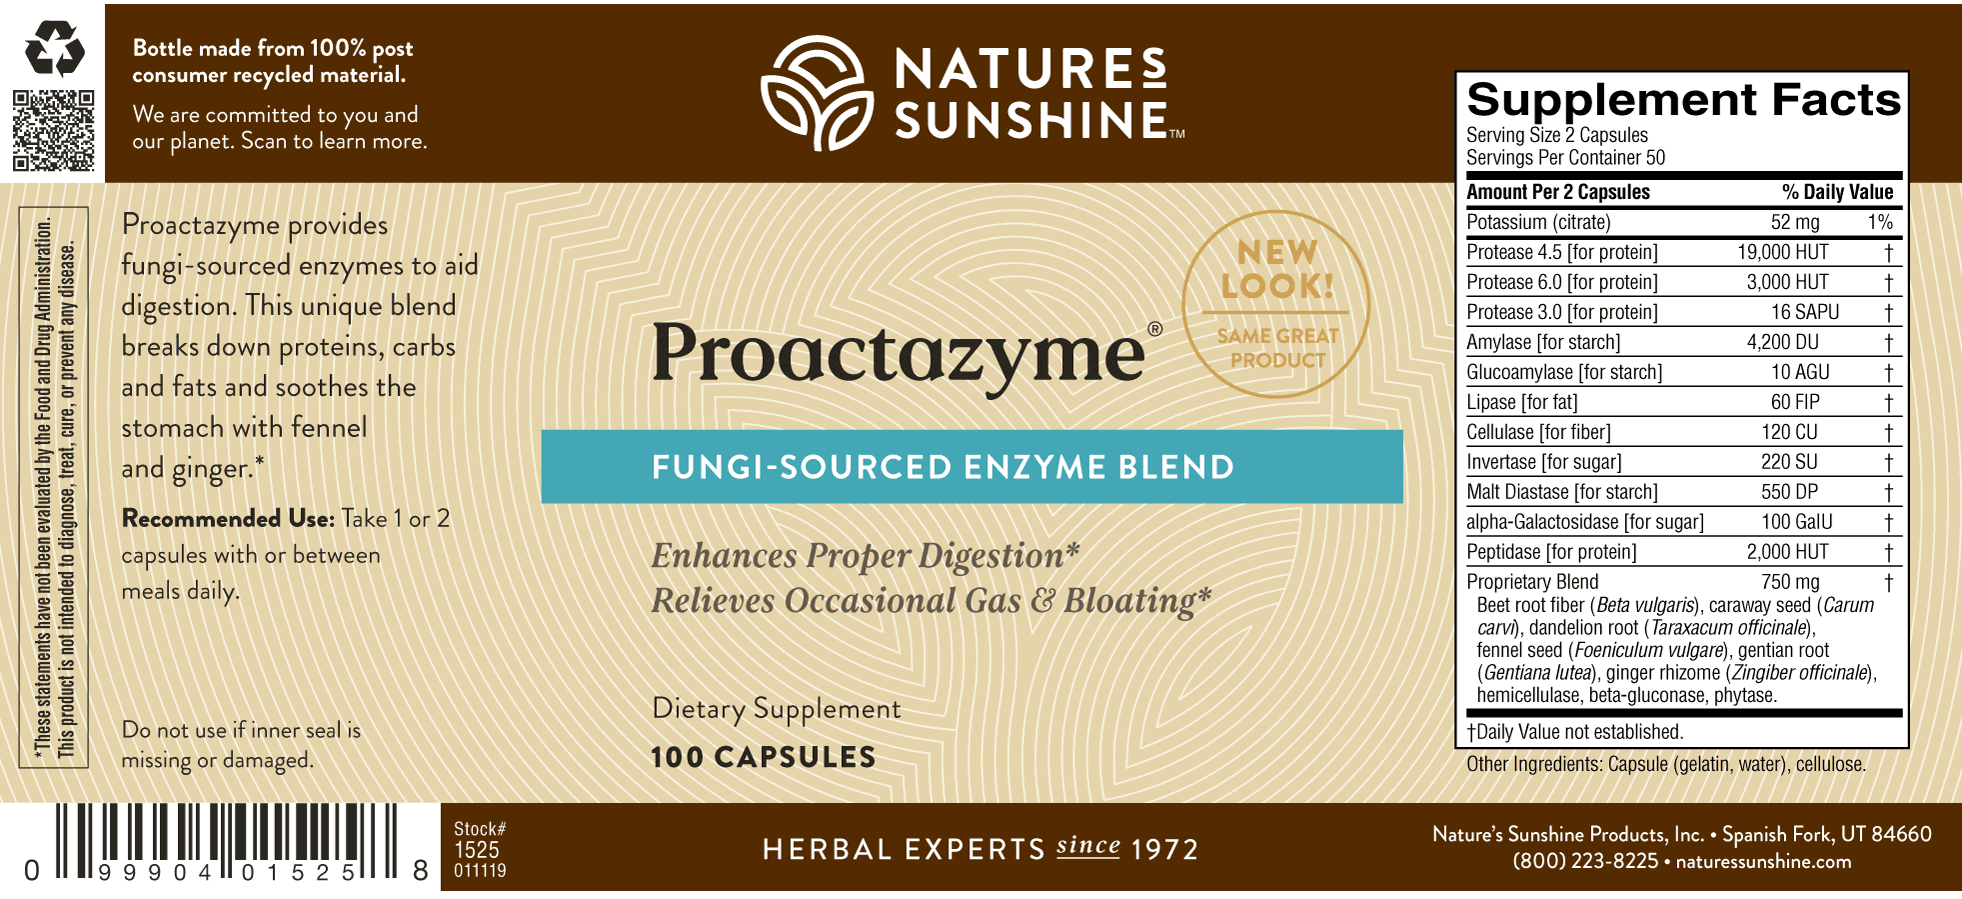 Natures Sunshine Proactazyme Label